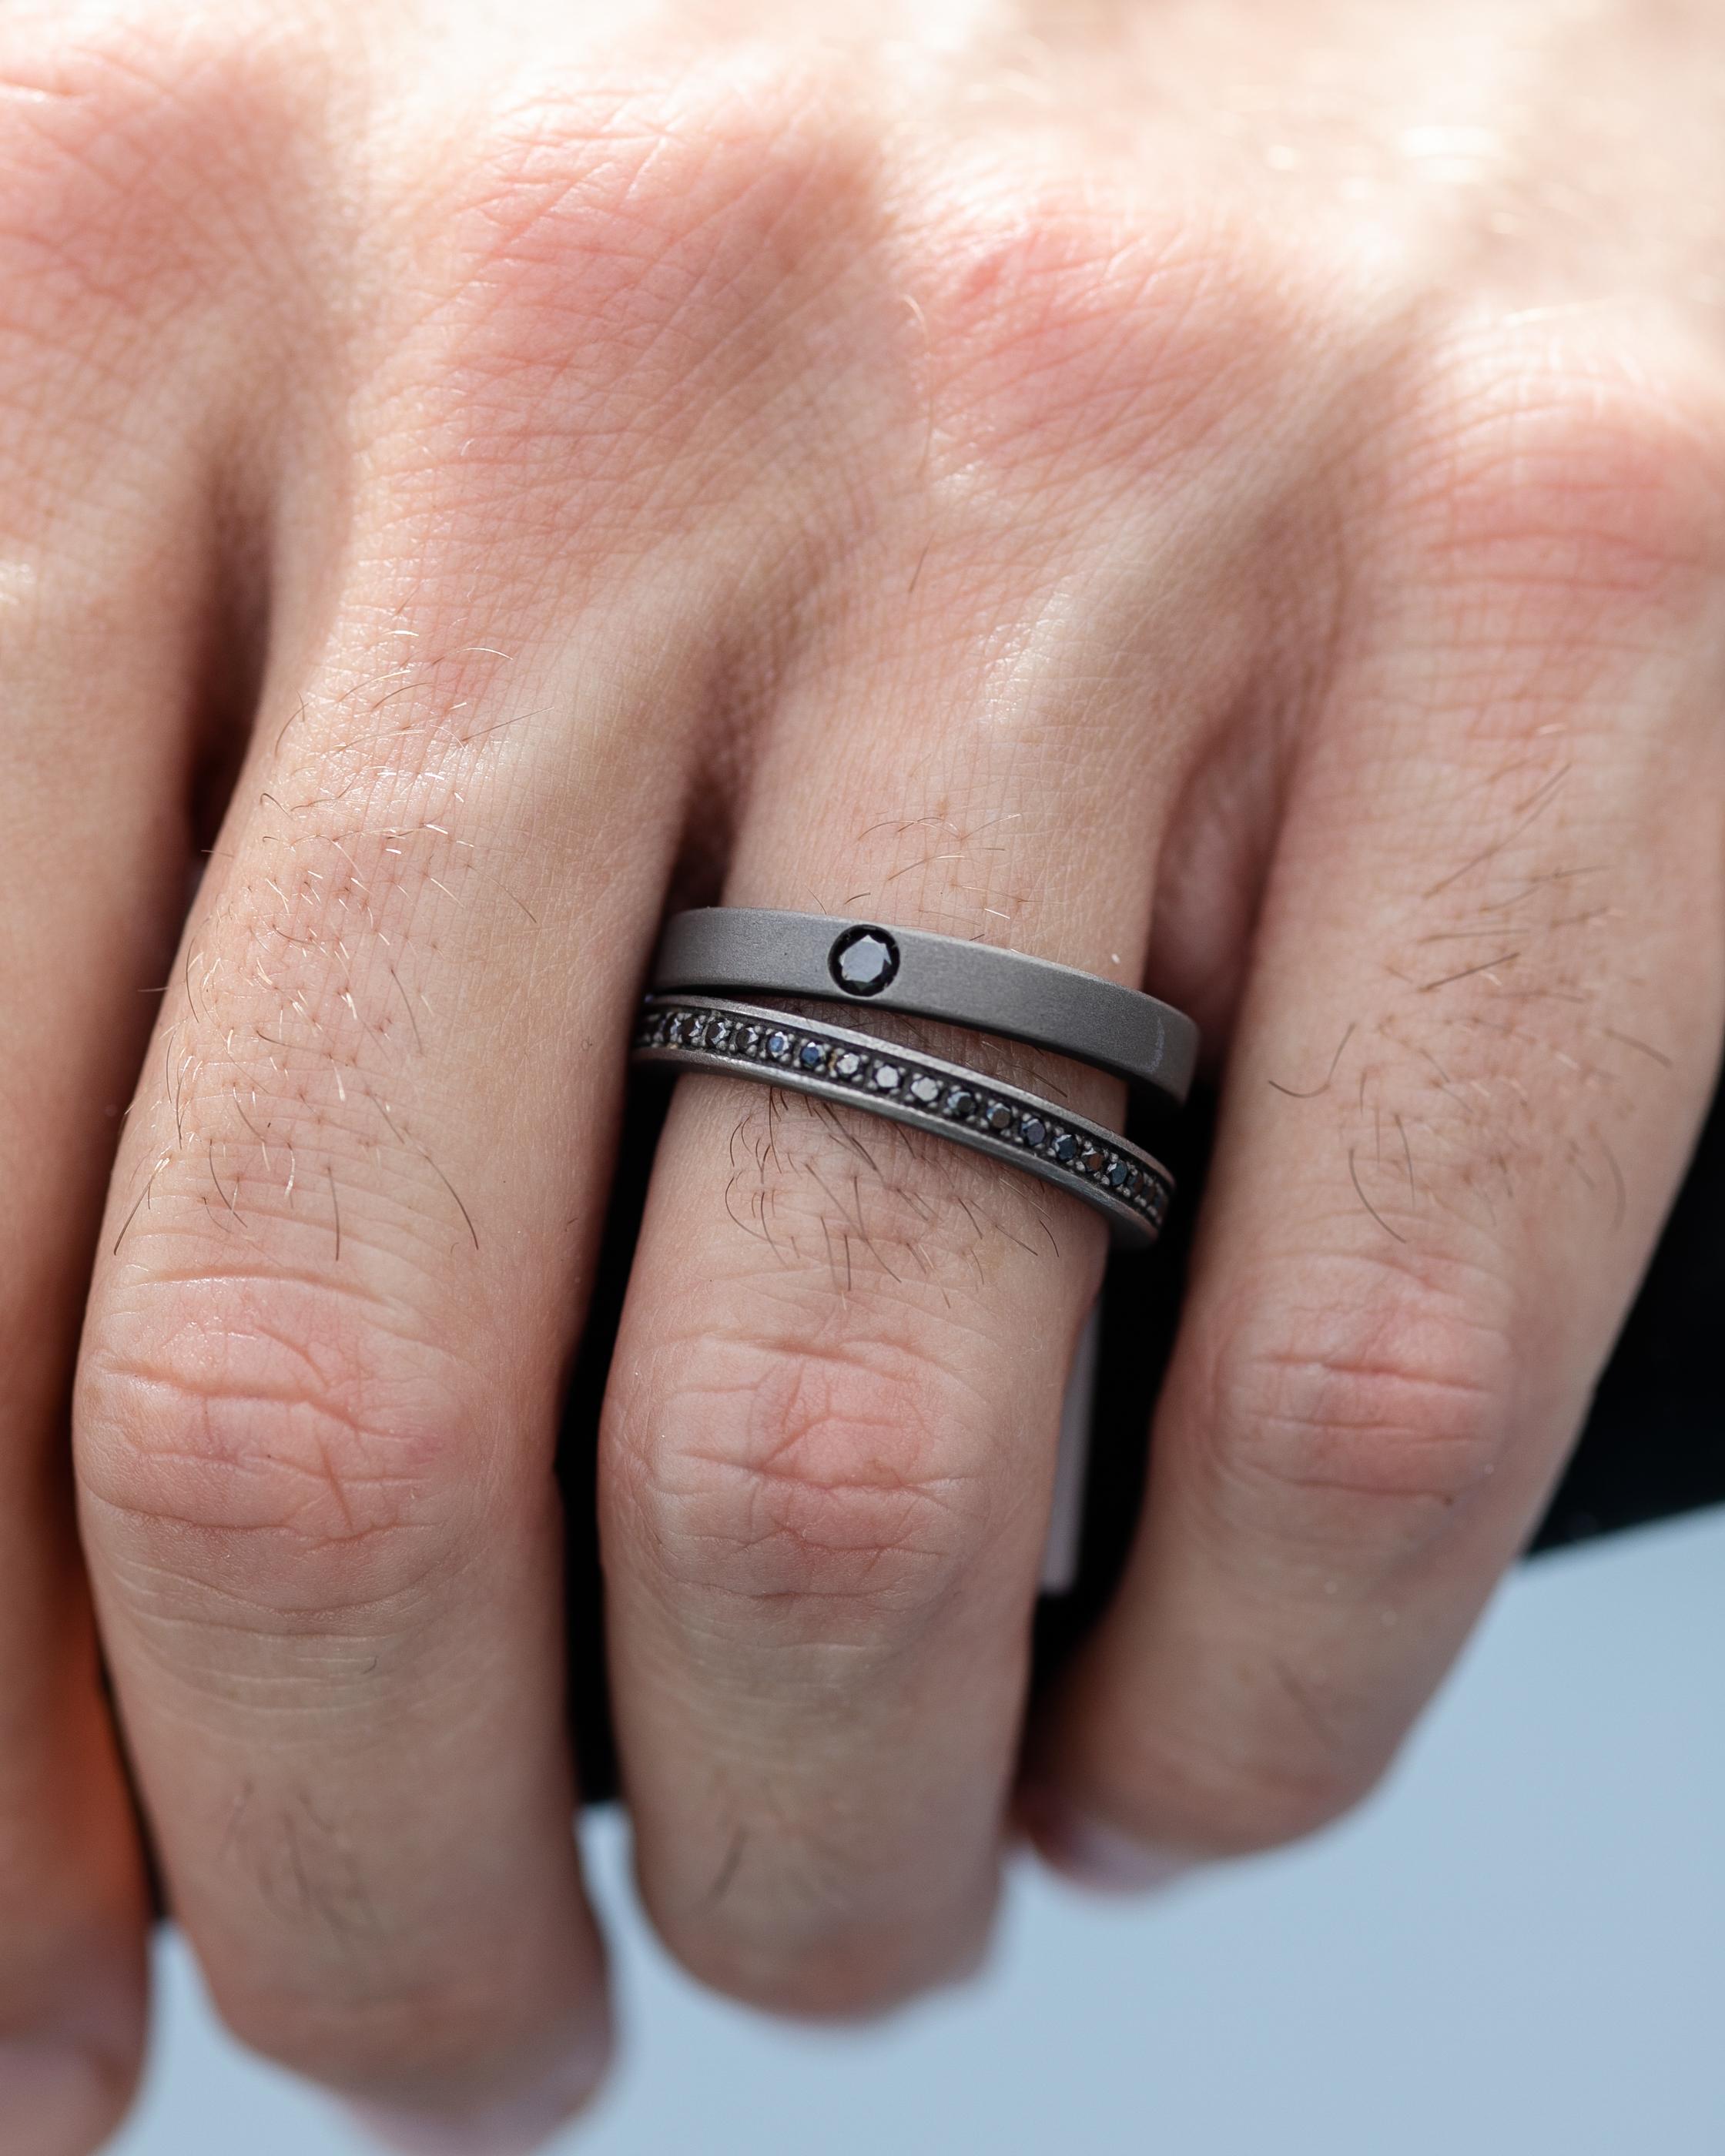 L'anneau en titane fait partie de notre collection pour hommes. Cette bague masculine est ornée d'un diamant noir rond d'une valeur totale de 0,1 carat. L'anneau mesure 0,3 cm de large. Parfait pour un look masculin !

La collection pour hommes est